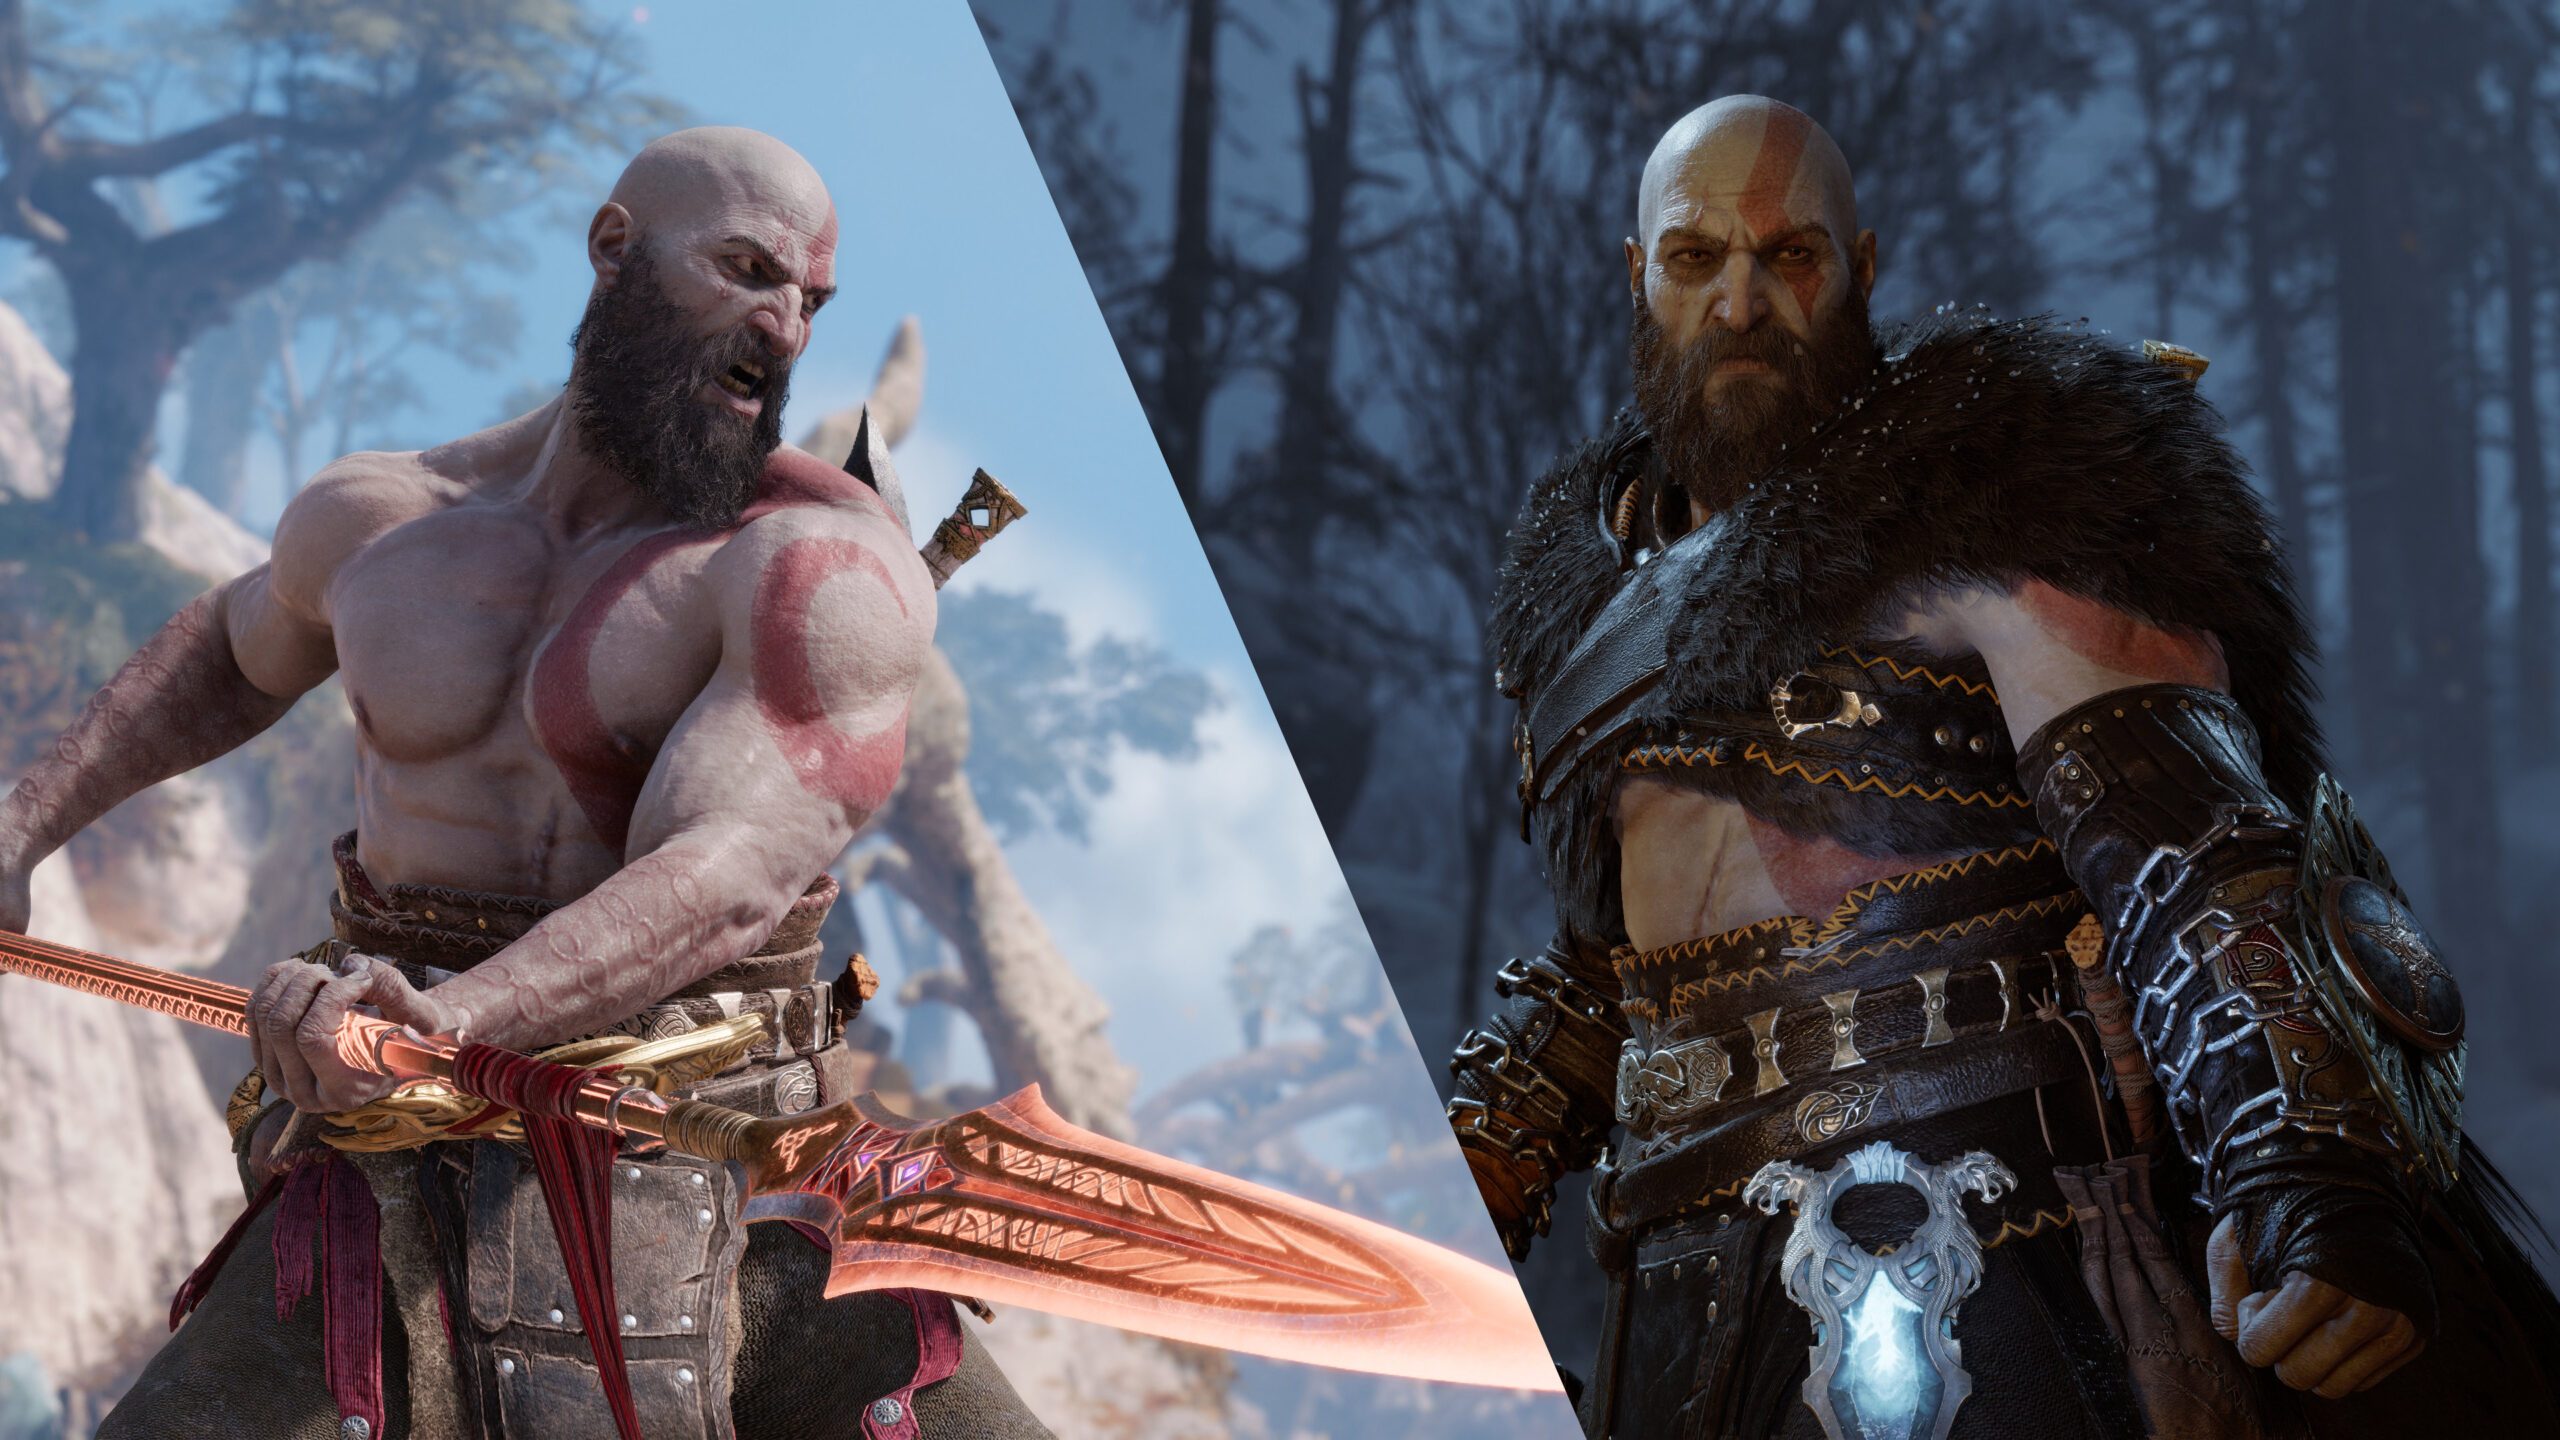  God of War Ragnarök rep una nova actualització de Game Plus